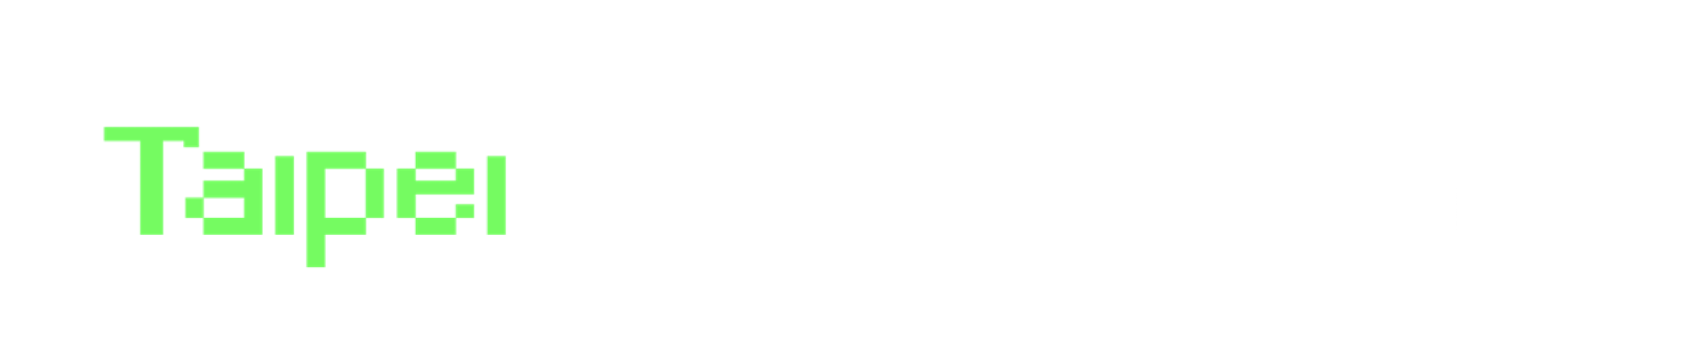 臺北程式設計節的Logo